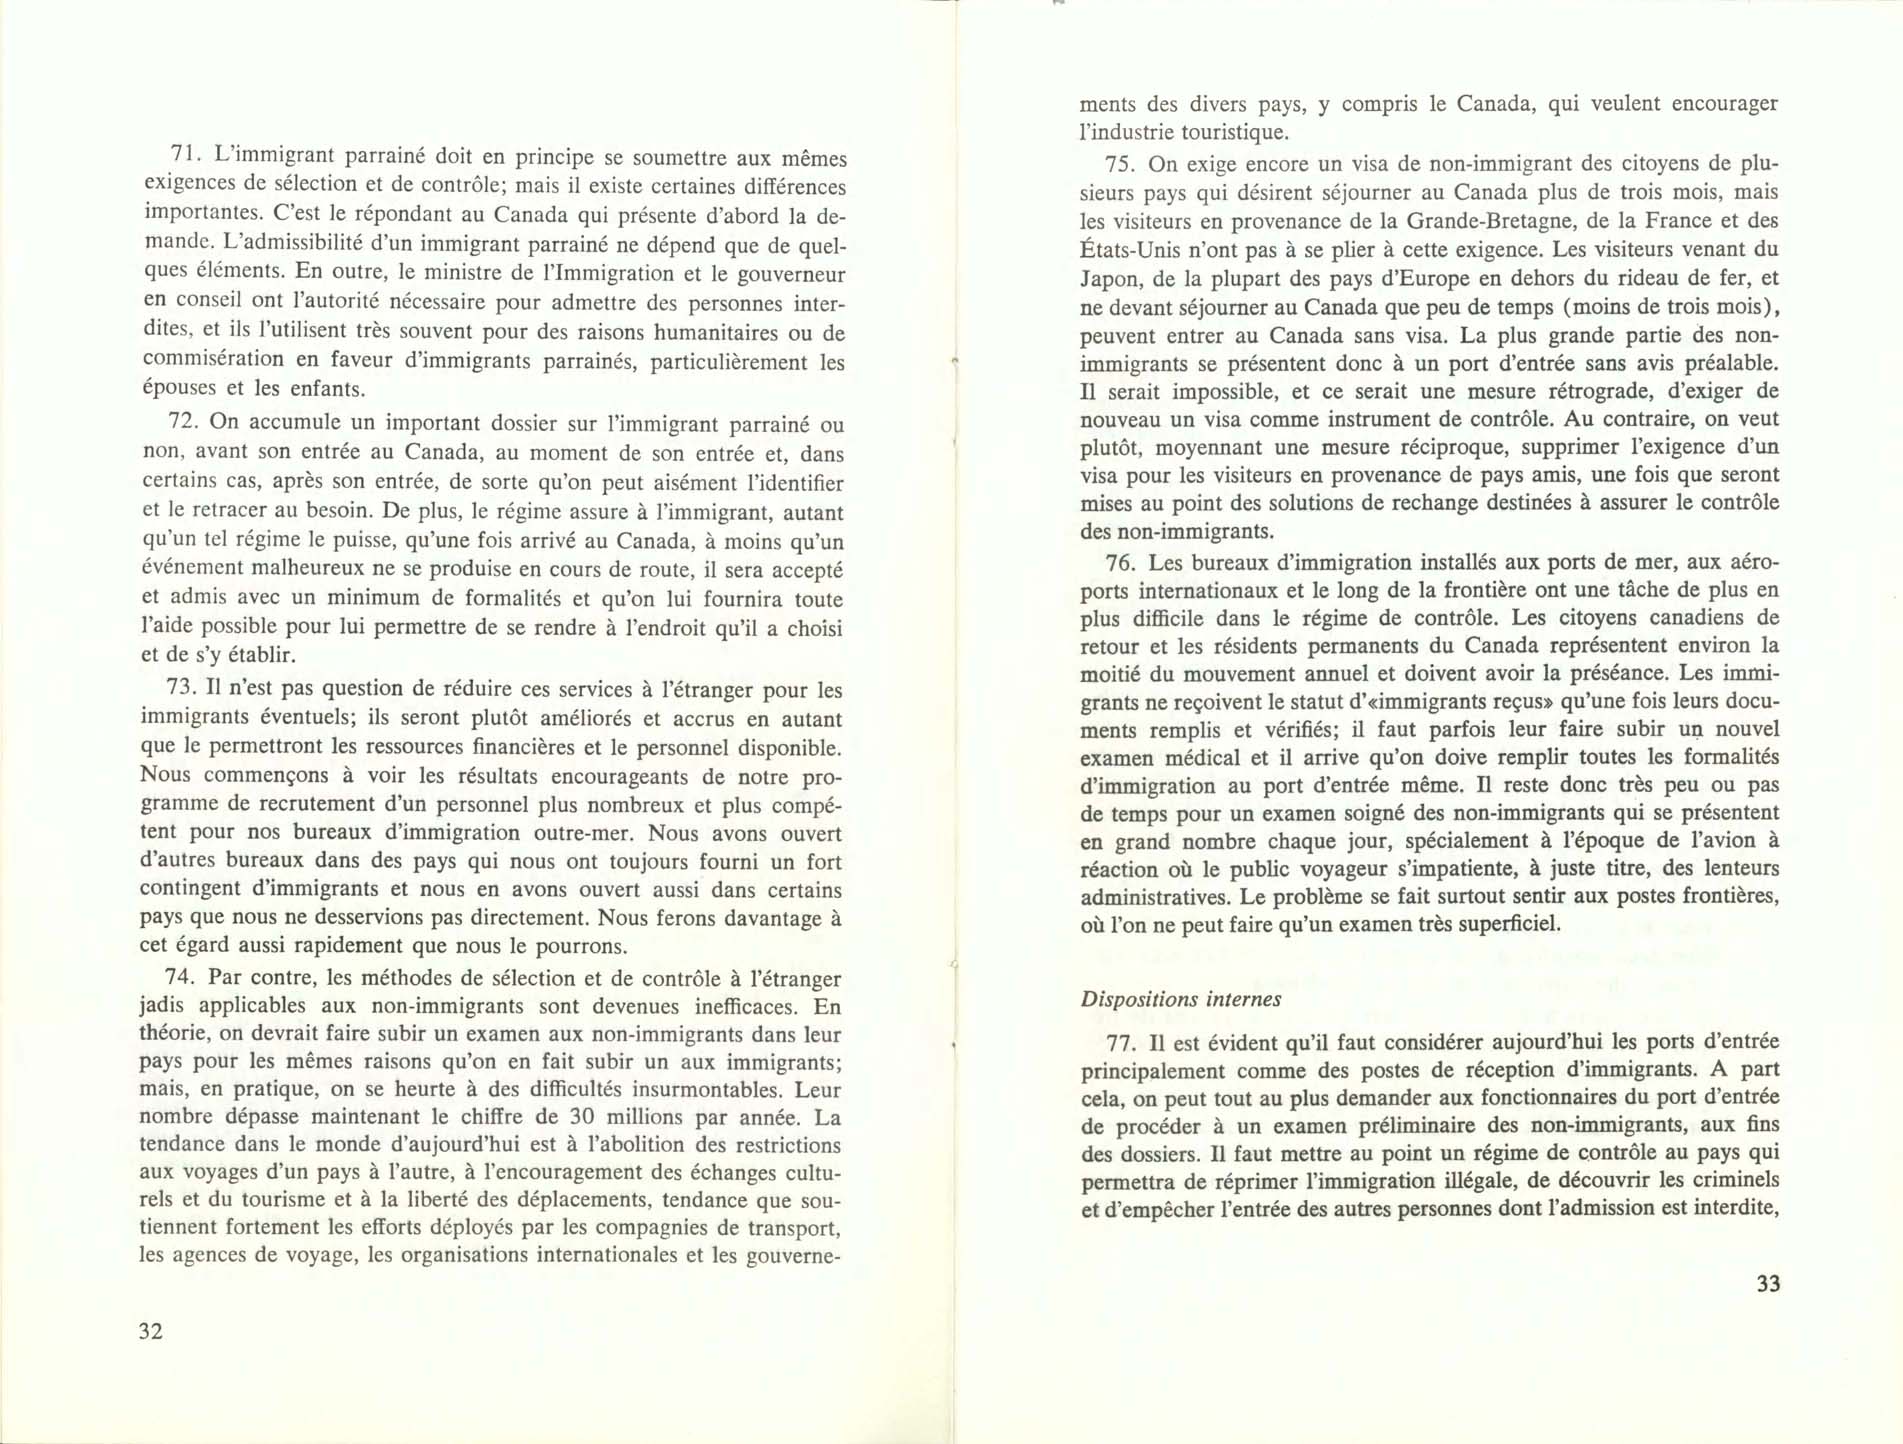 Page 32, 33 Livre Blanc sur l’immigration, 1966